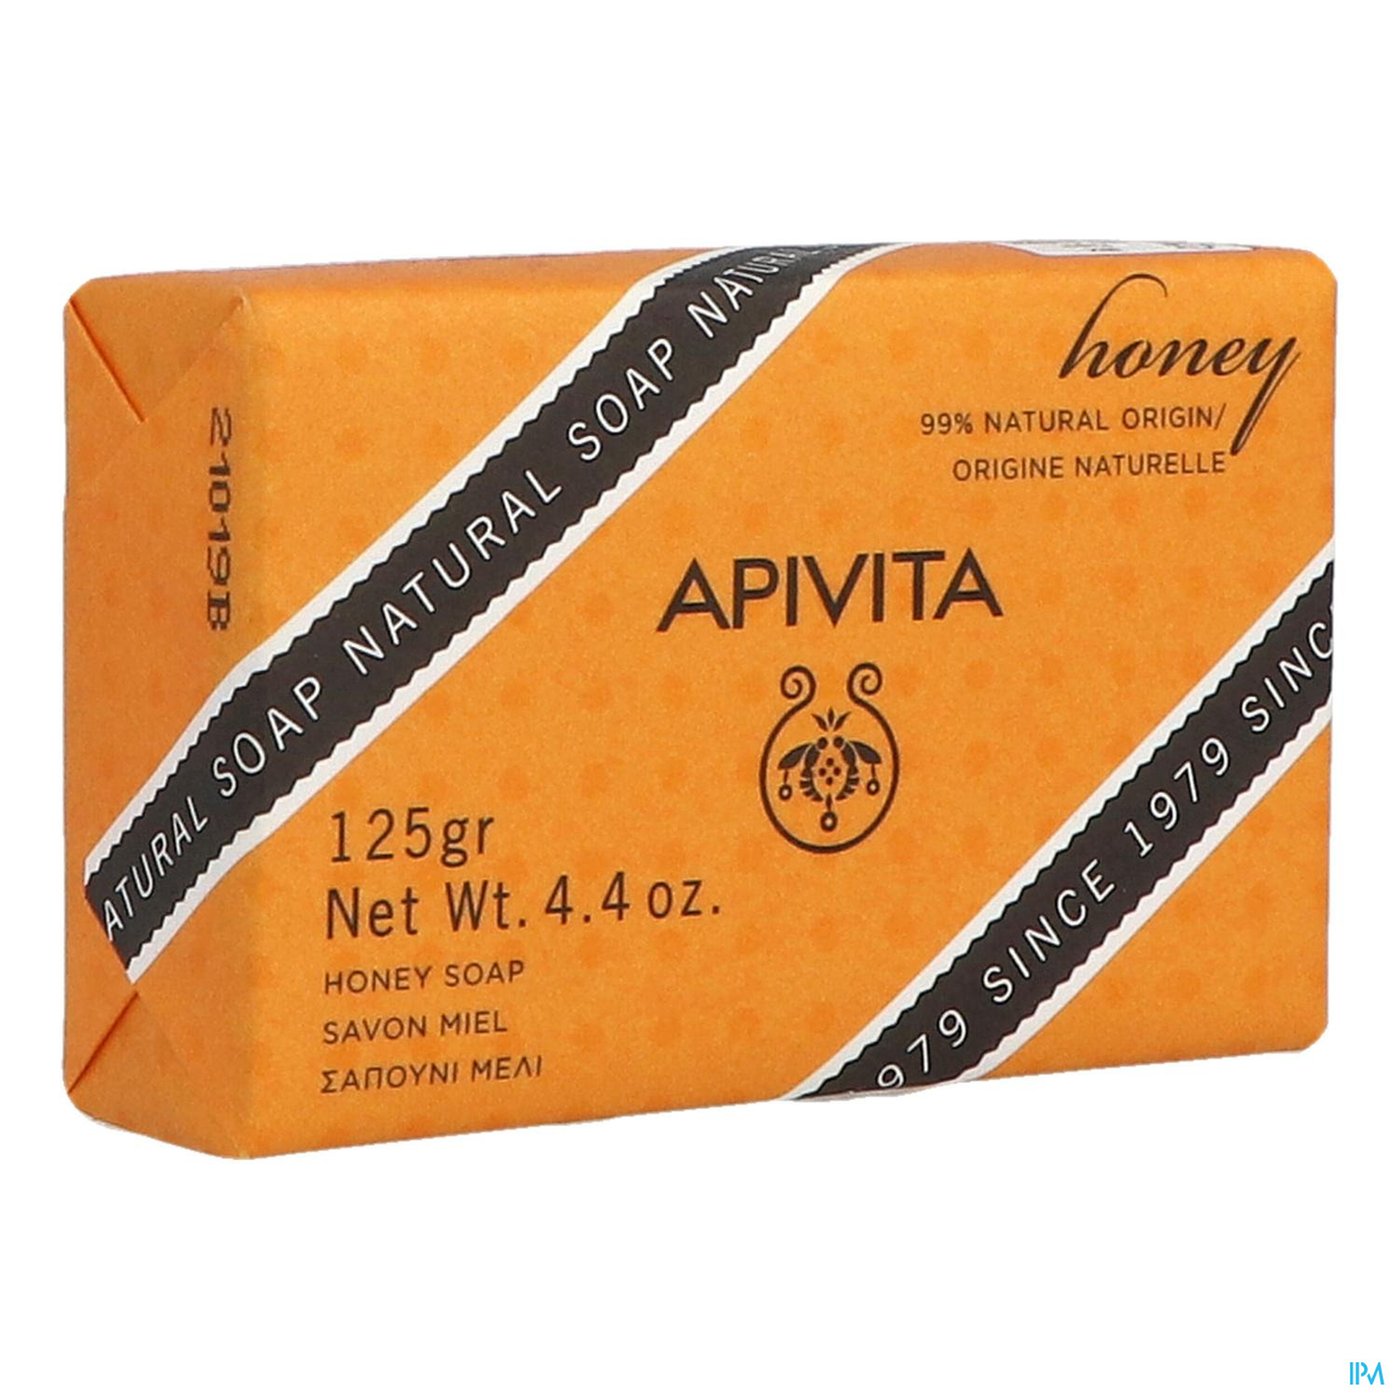 Apivita Natuurlijke Zeep Honing 125g packshot